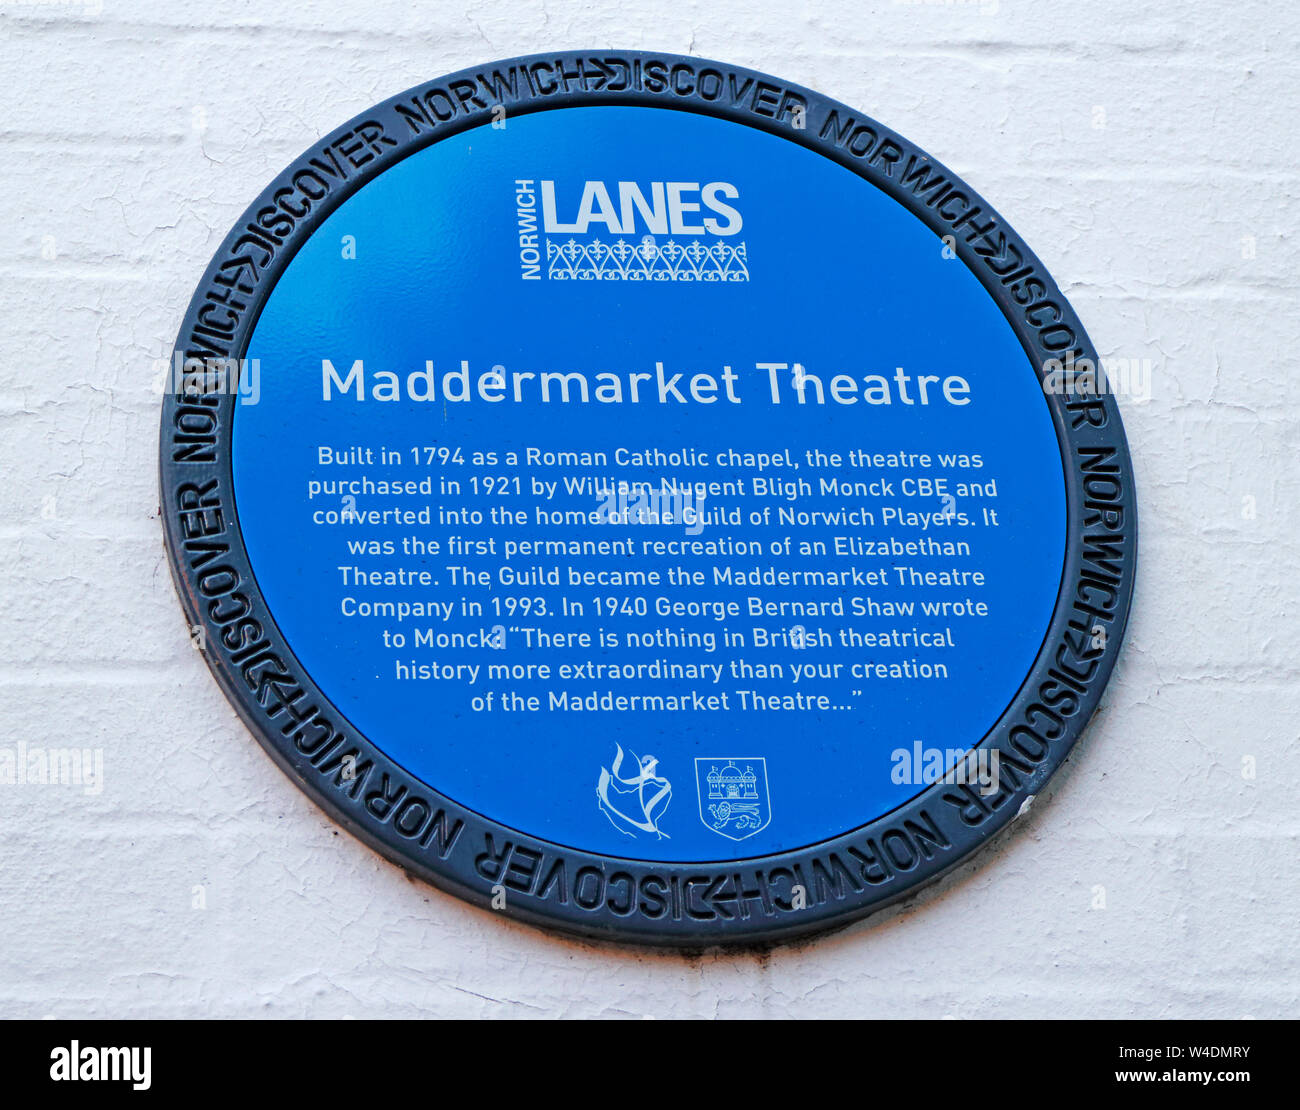 Découvrez une plaque bleue à Norwich Norwich Lanes par l'Maddermarket Theatre, Norwich, Norfolk, Angleterre, Royaume-Uni, Europe. Banque D'Images